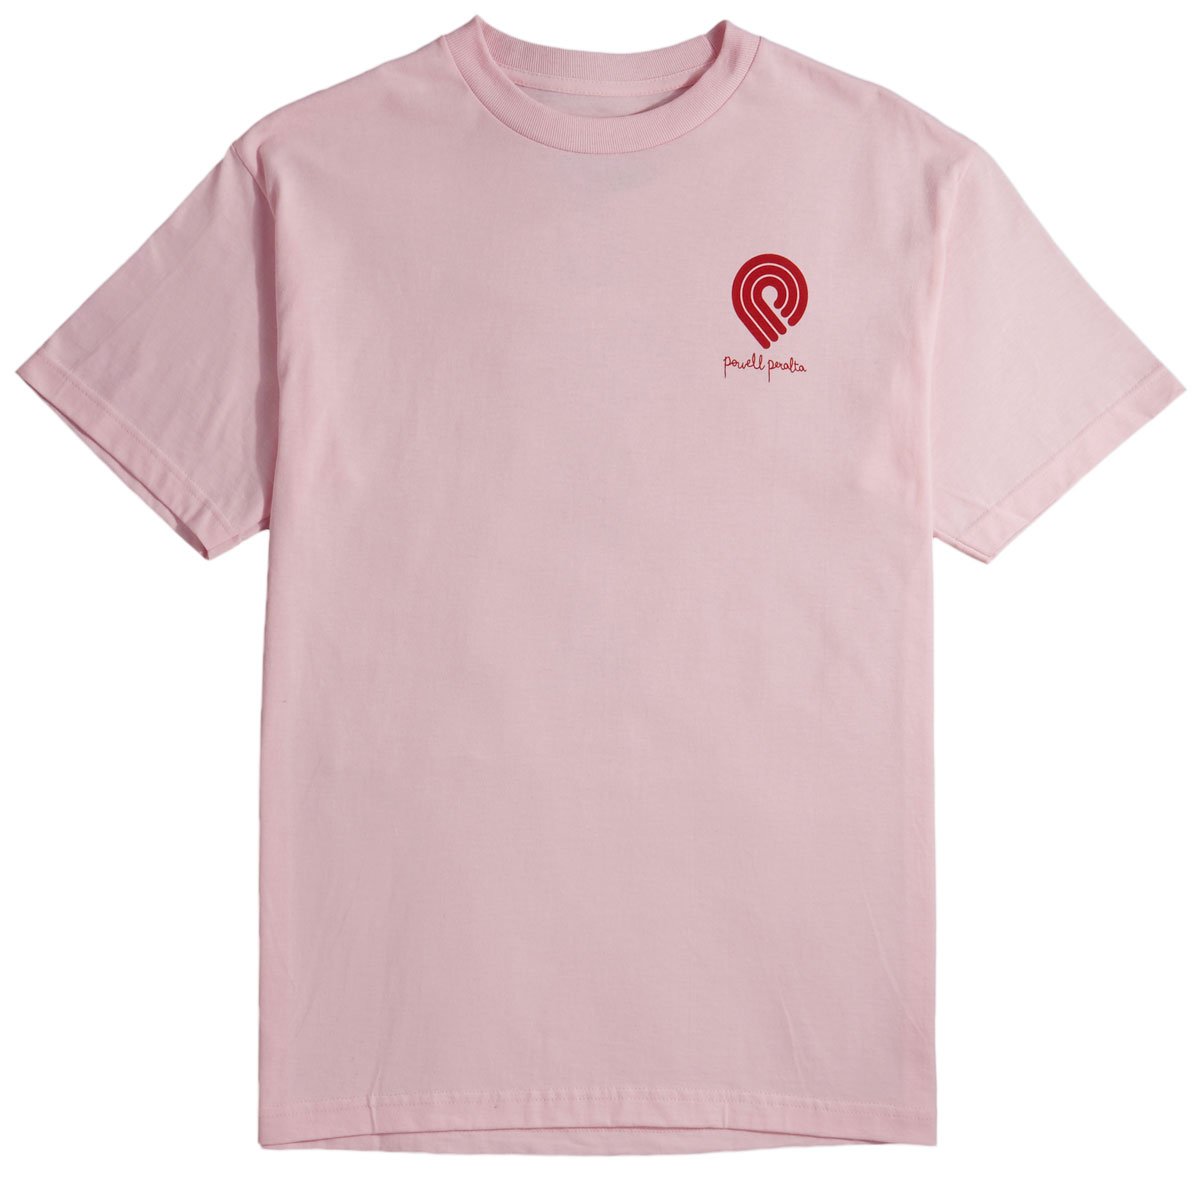 Powell-Peralta Tucking Skeleton T-Shirt - Light Pink image 1